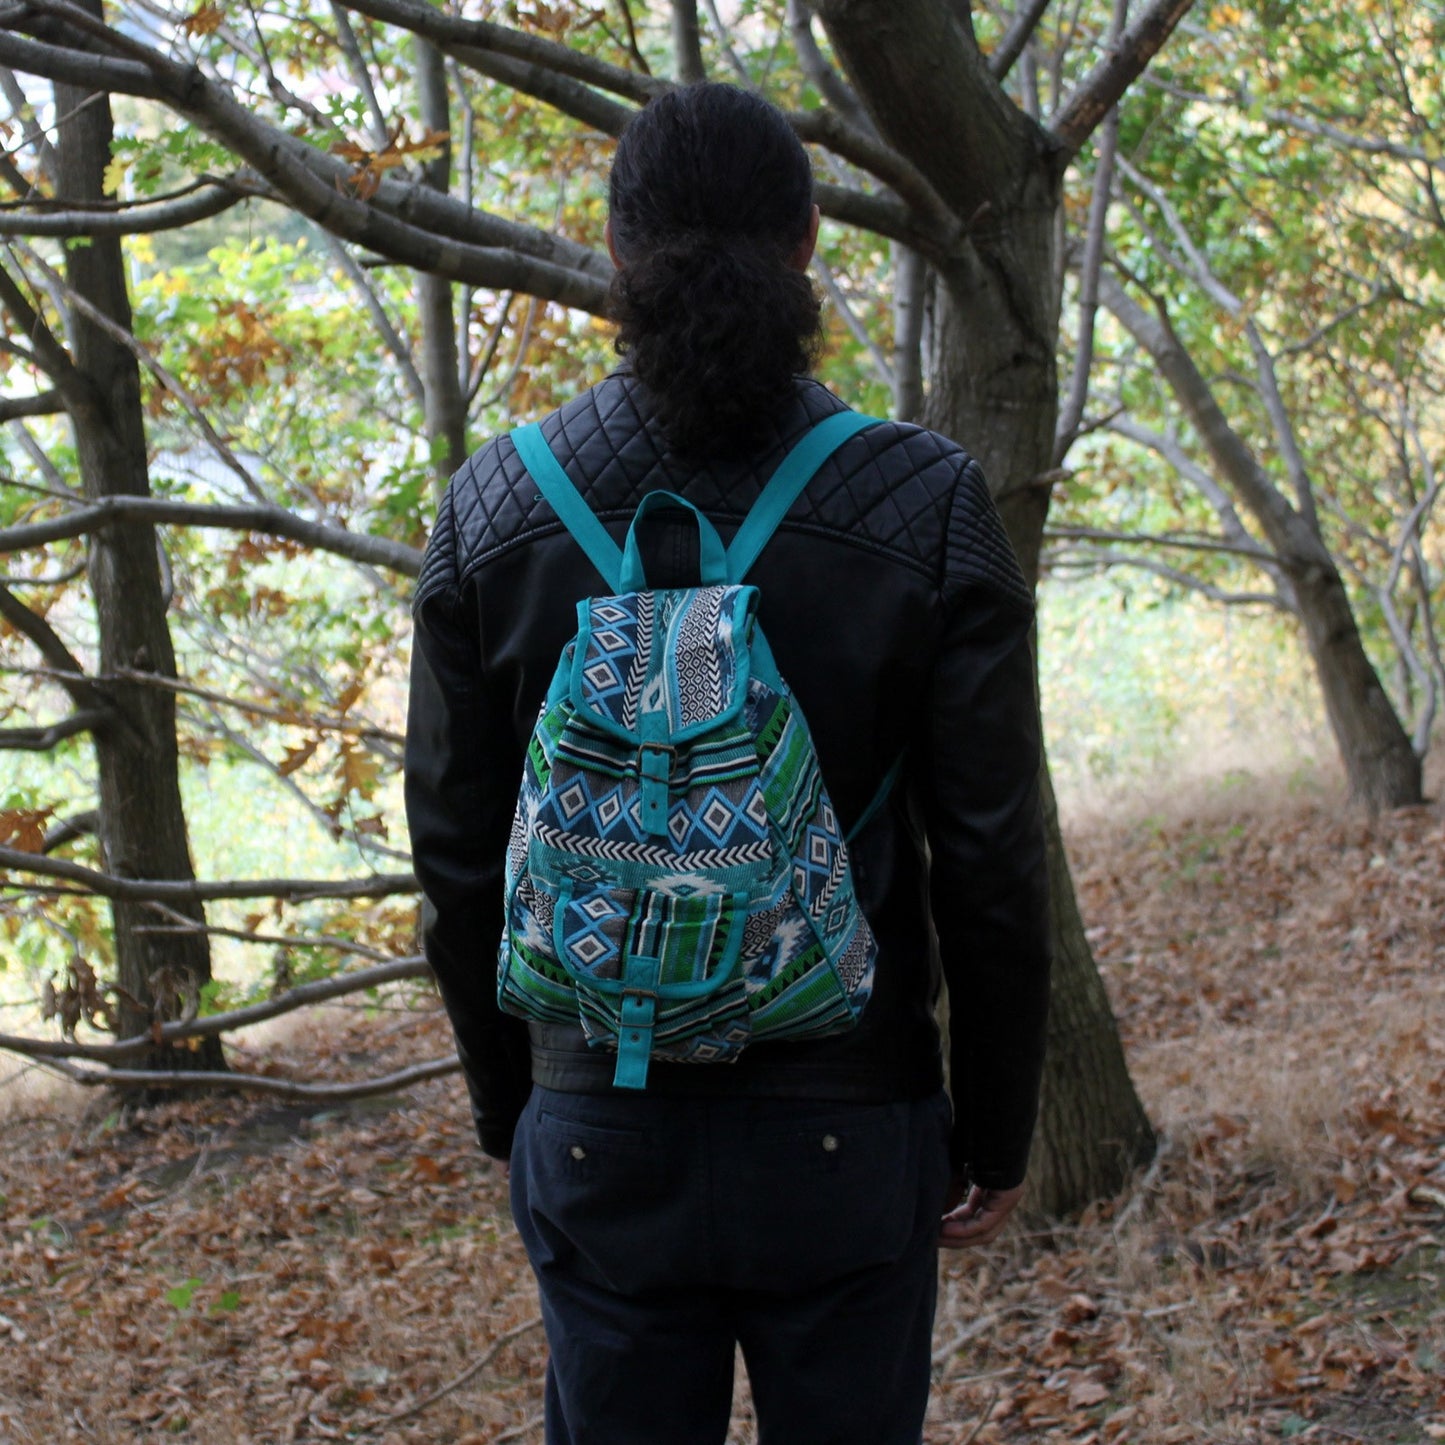 Jacquard Bag - Teal Backpack